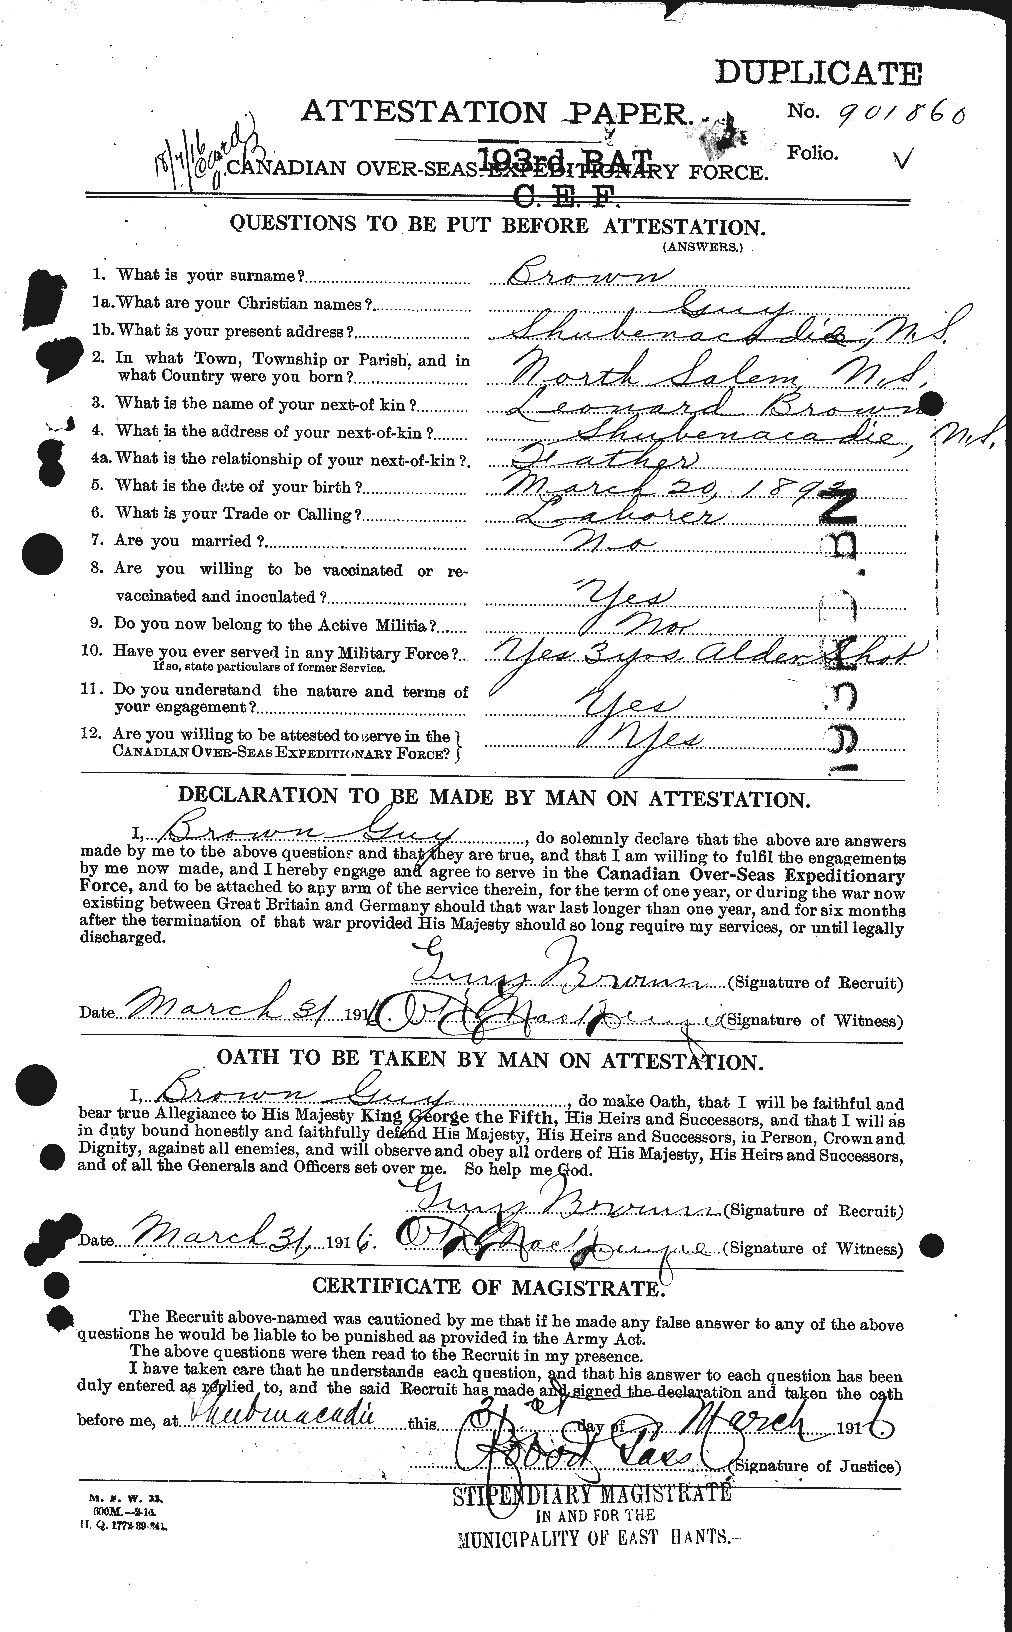 Dossiers du Personnel de la Première Guerre mondiale - CEC 262653a